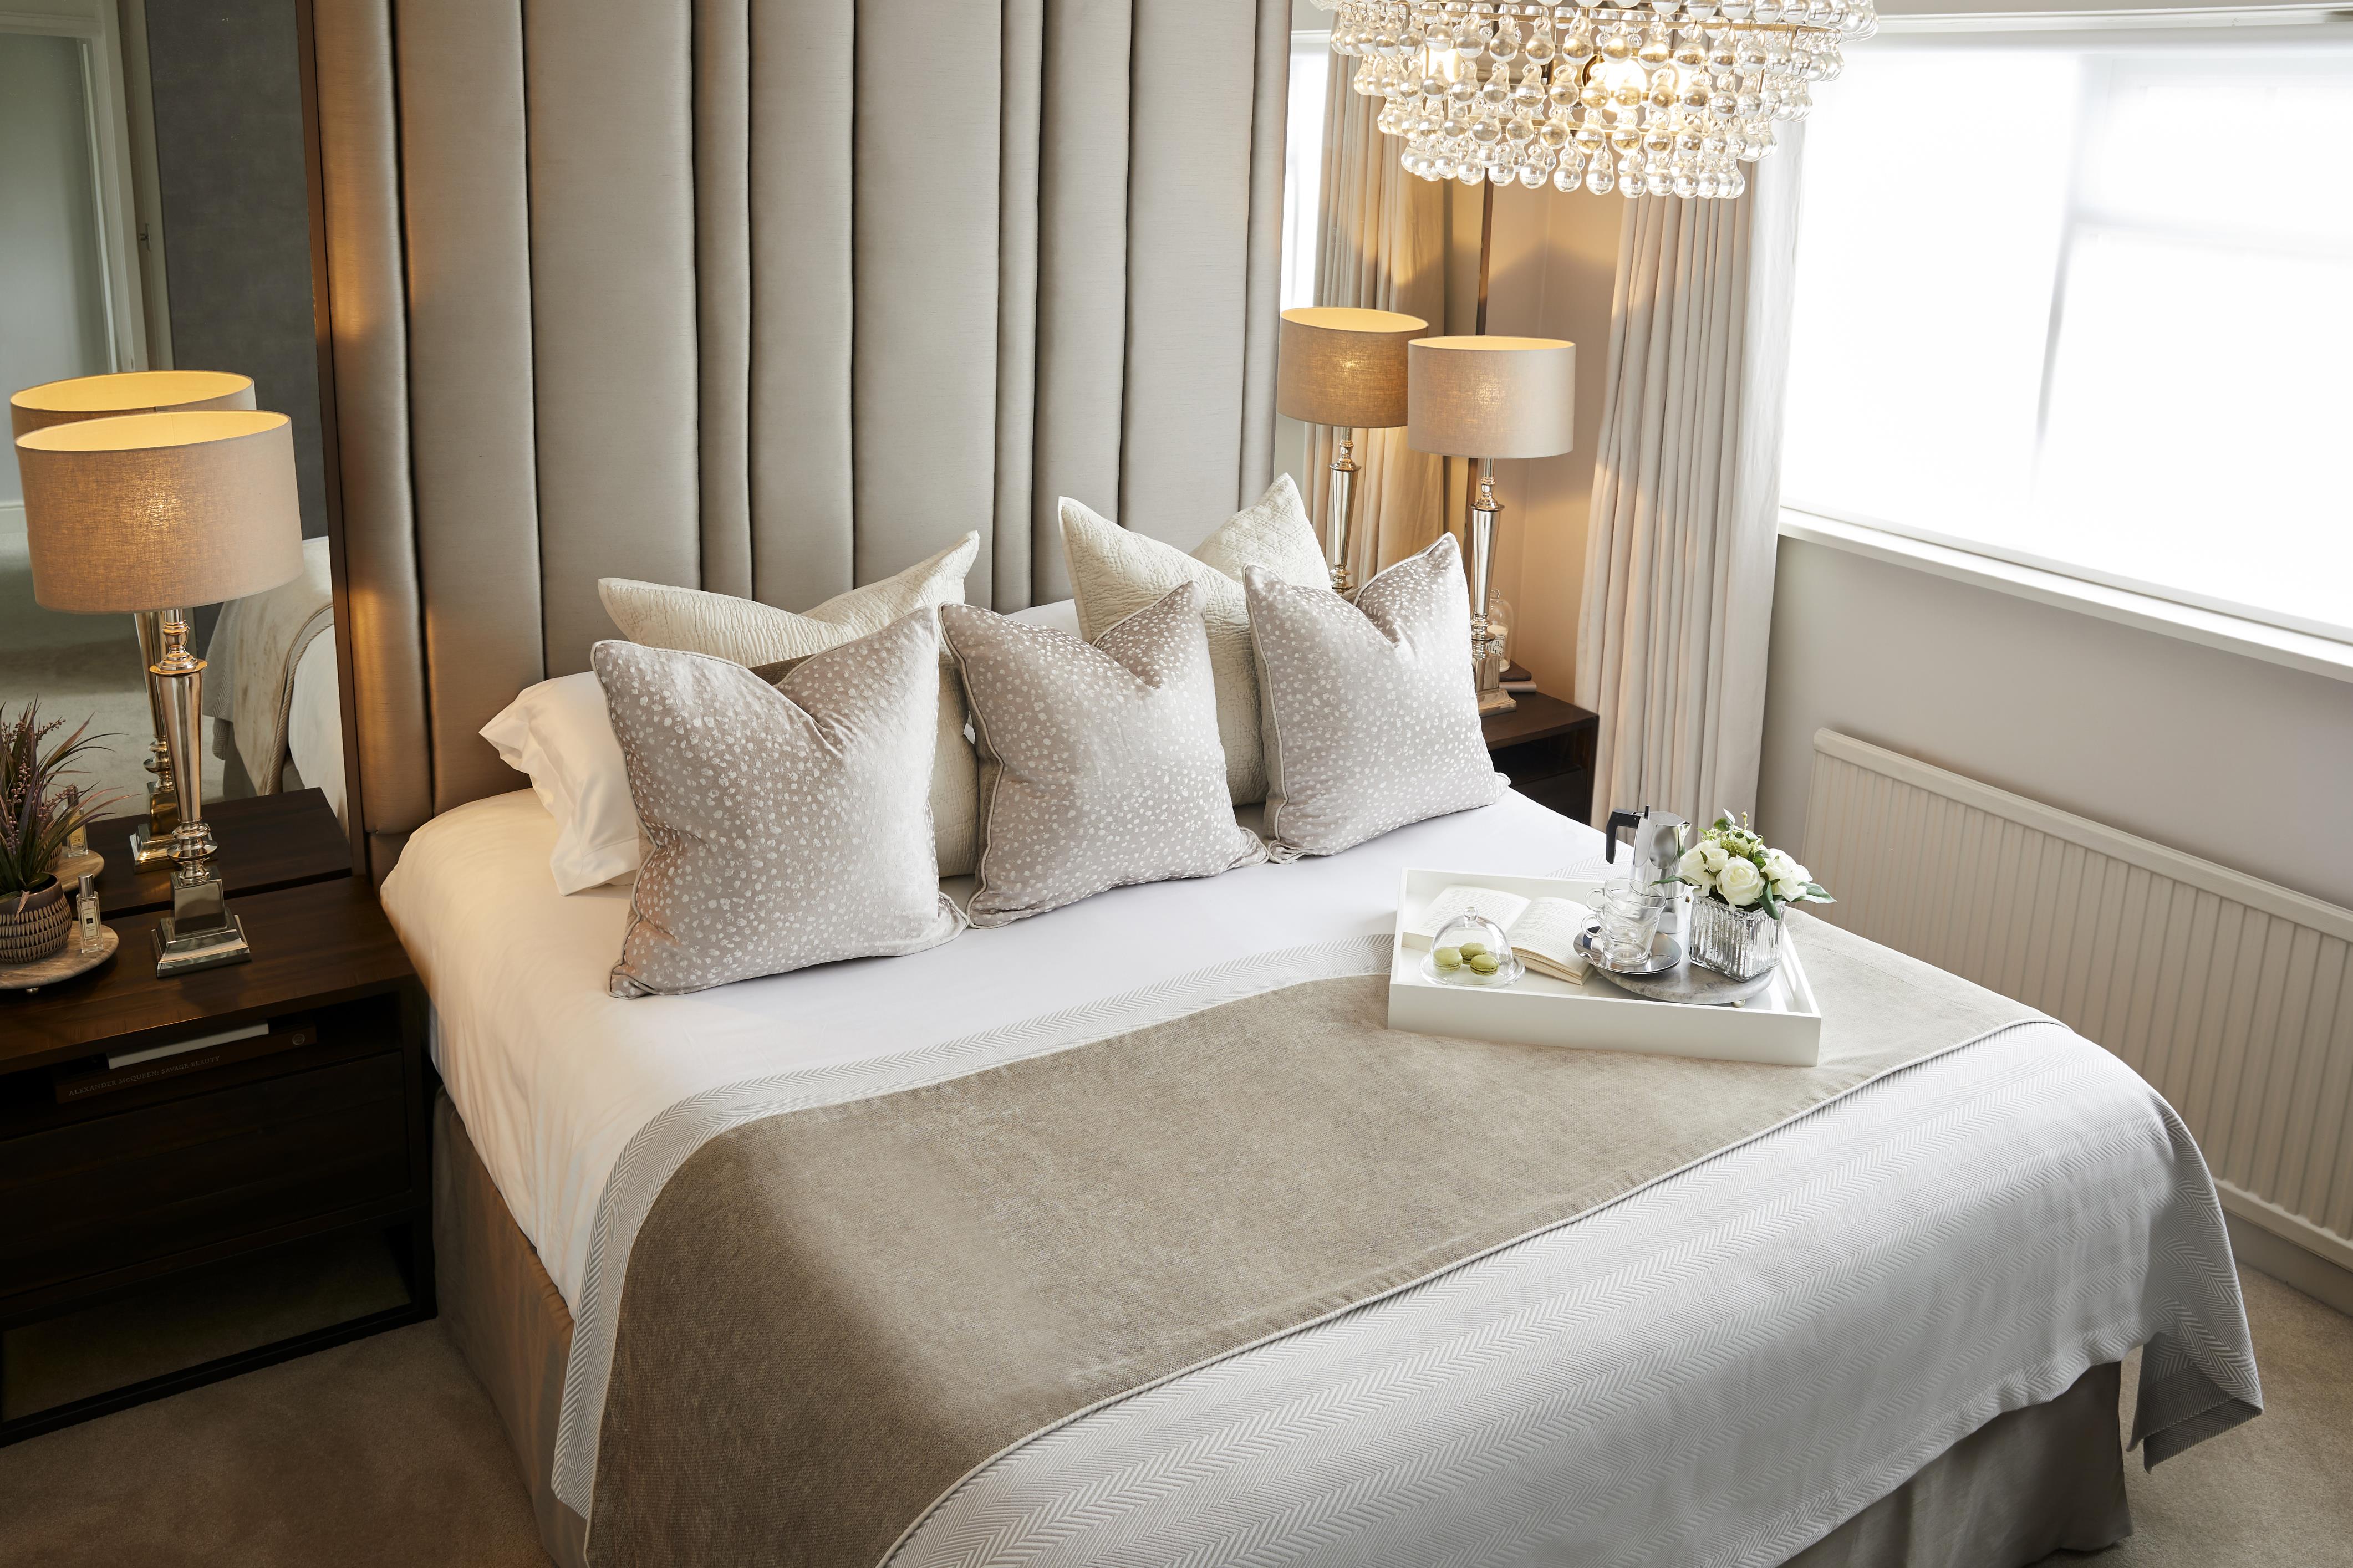 hotel bedroom furniture melbourne